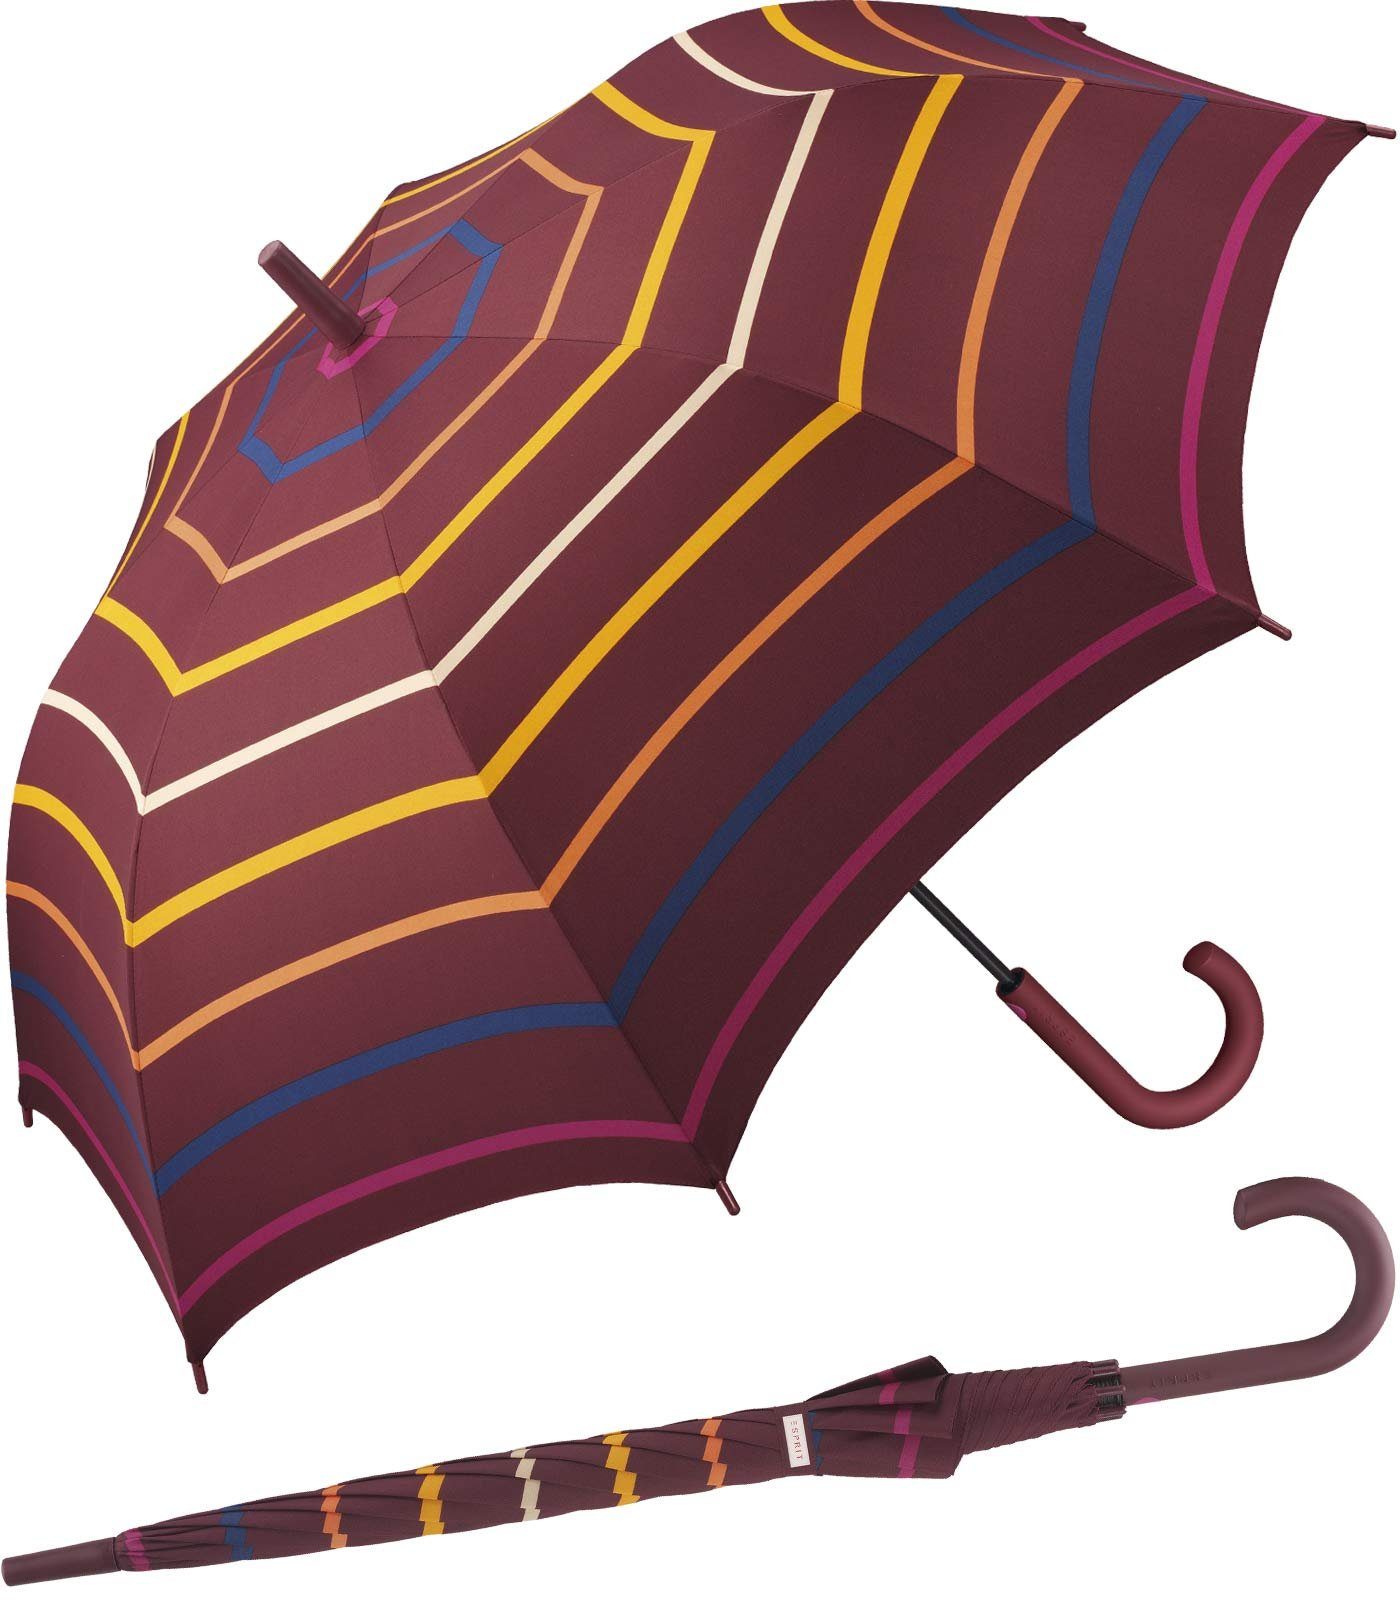 für leicht, mit stabil, warmen Regenschirm Streifen Esprit in Farbtönen mit Damen Auf-Automatik, großer Langregenschirm